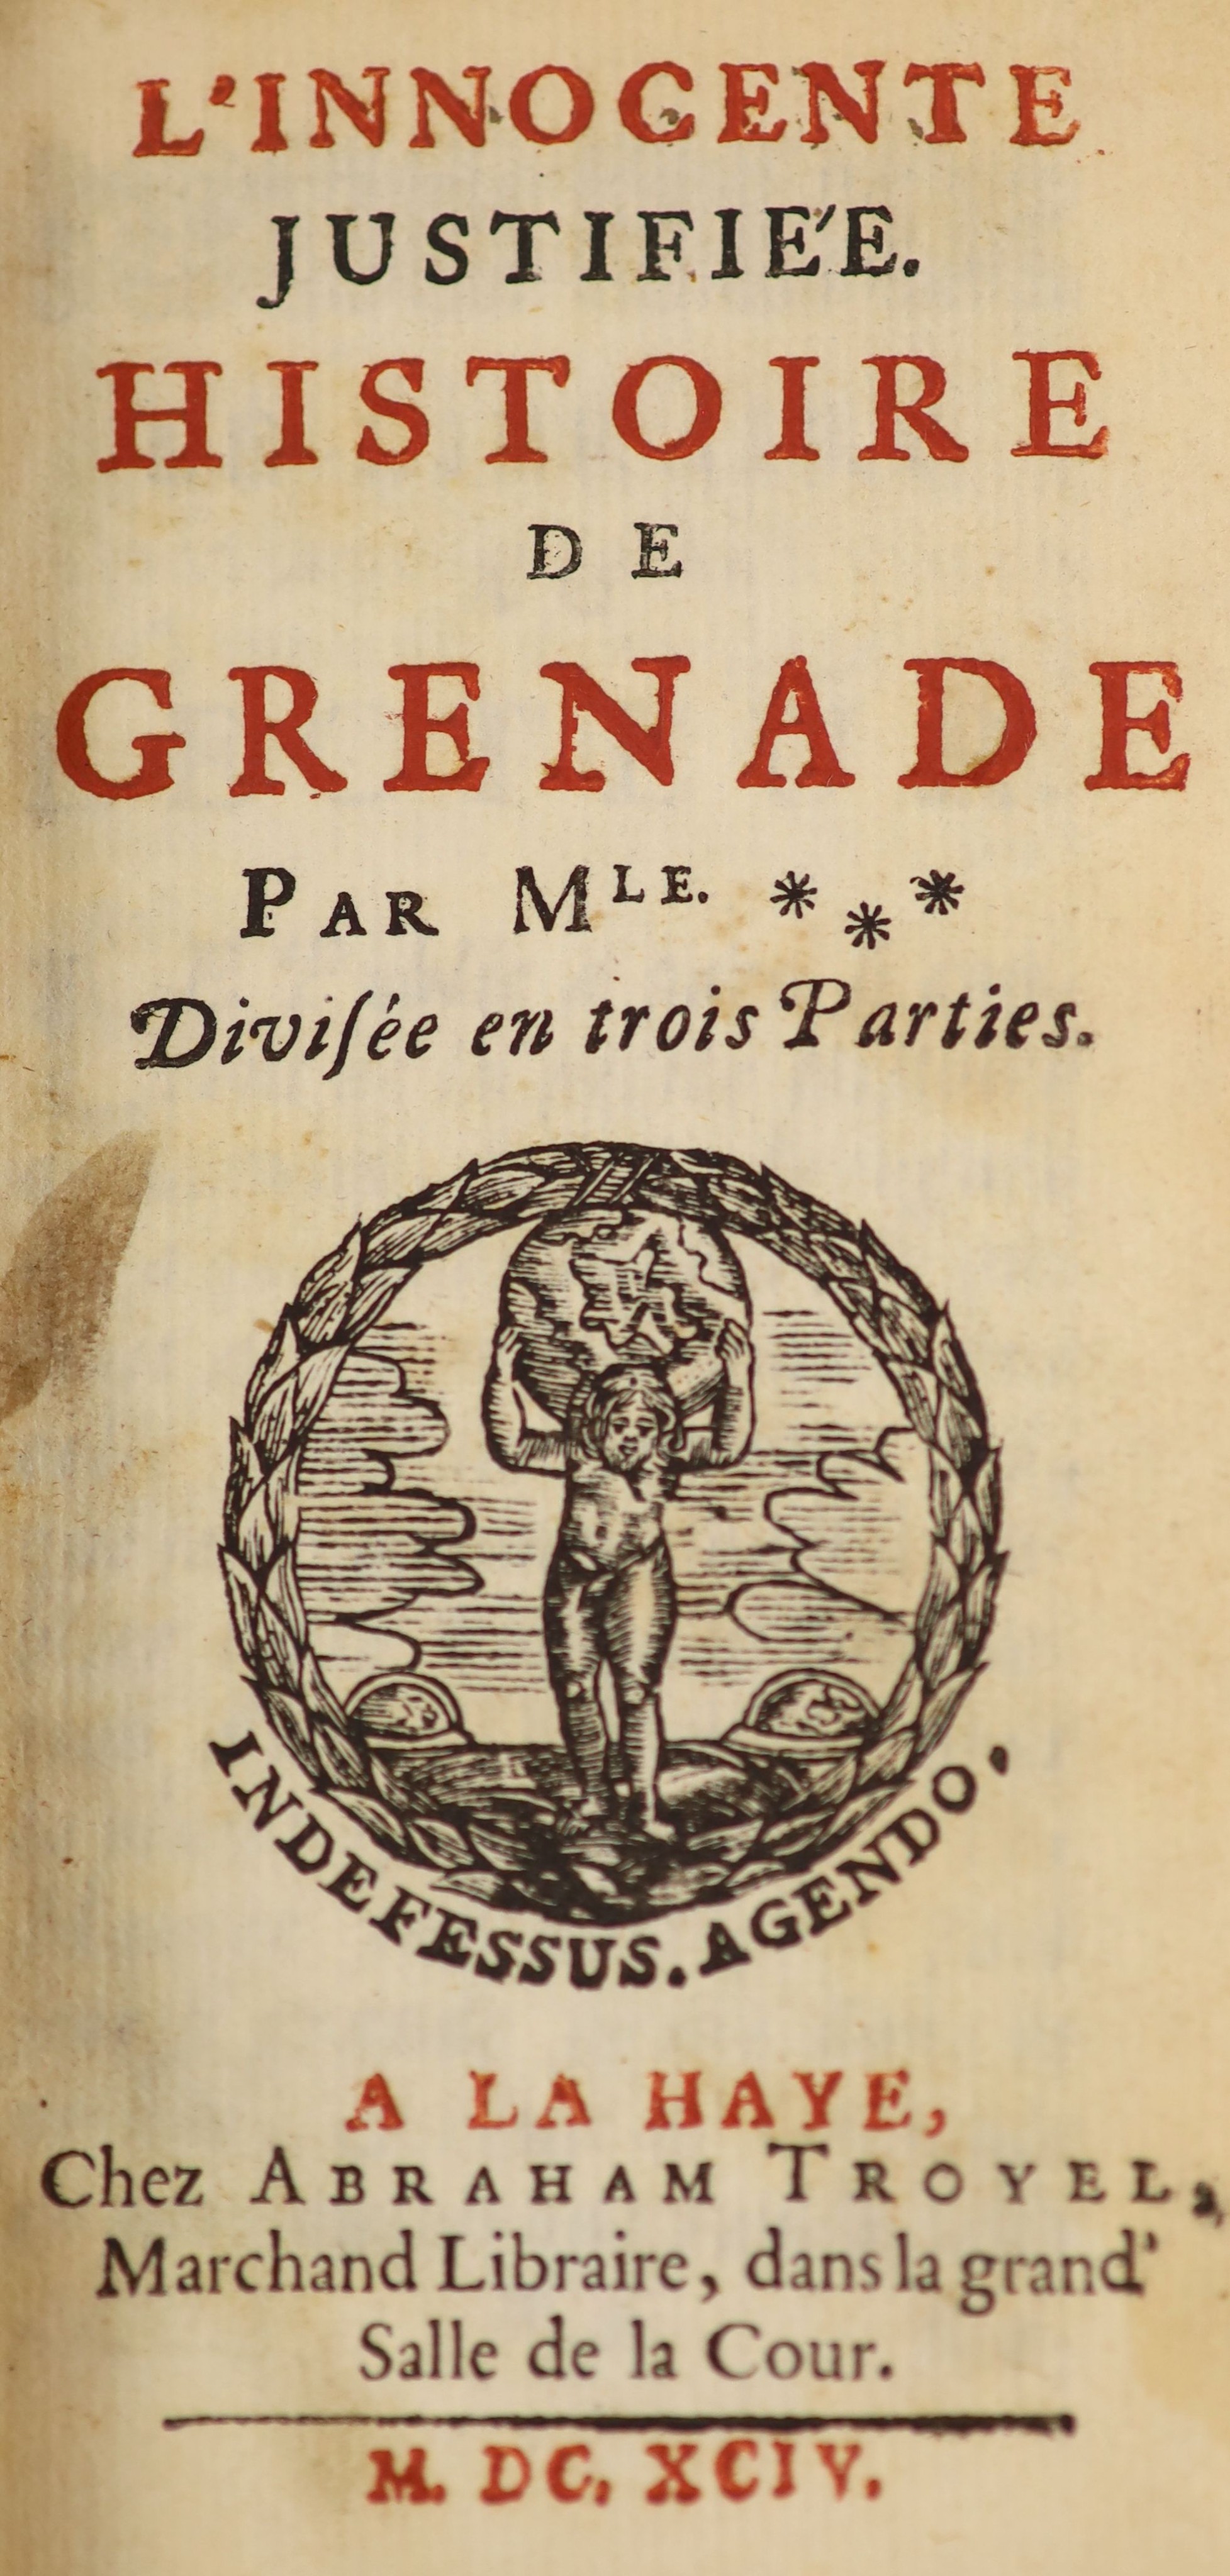 L'Innocente Justifiee Histoire de Grenade. Per Mle...